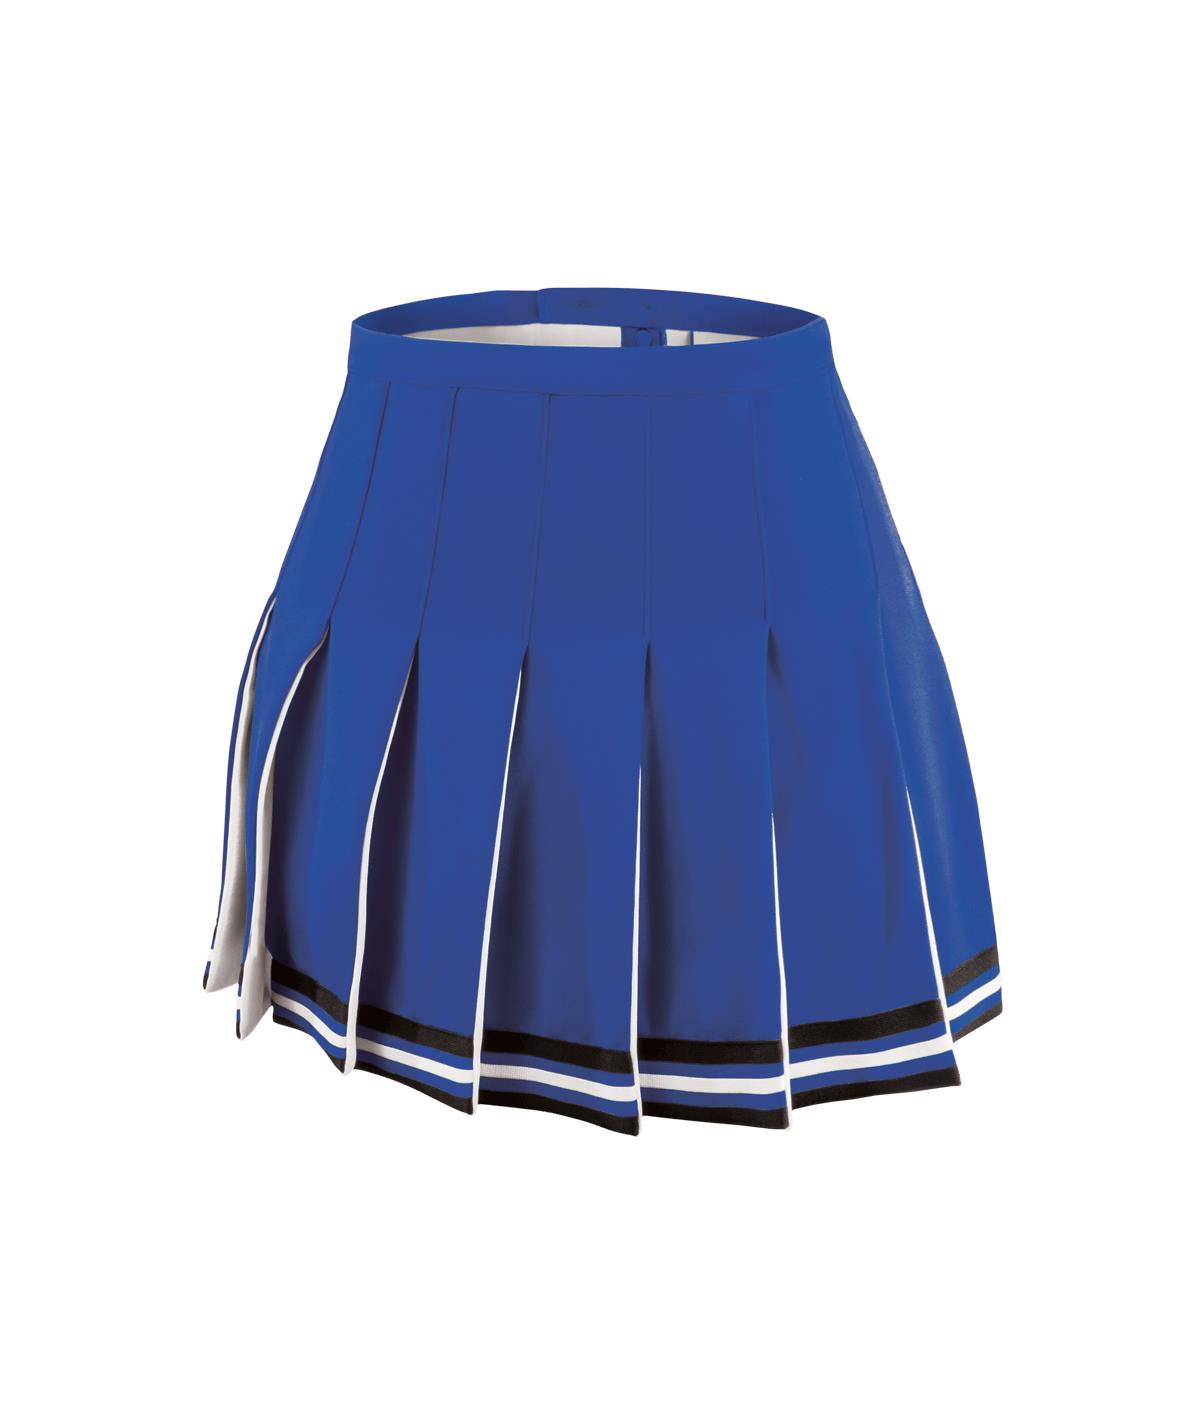 GK Sideline Gladiator Skirt